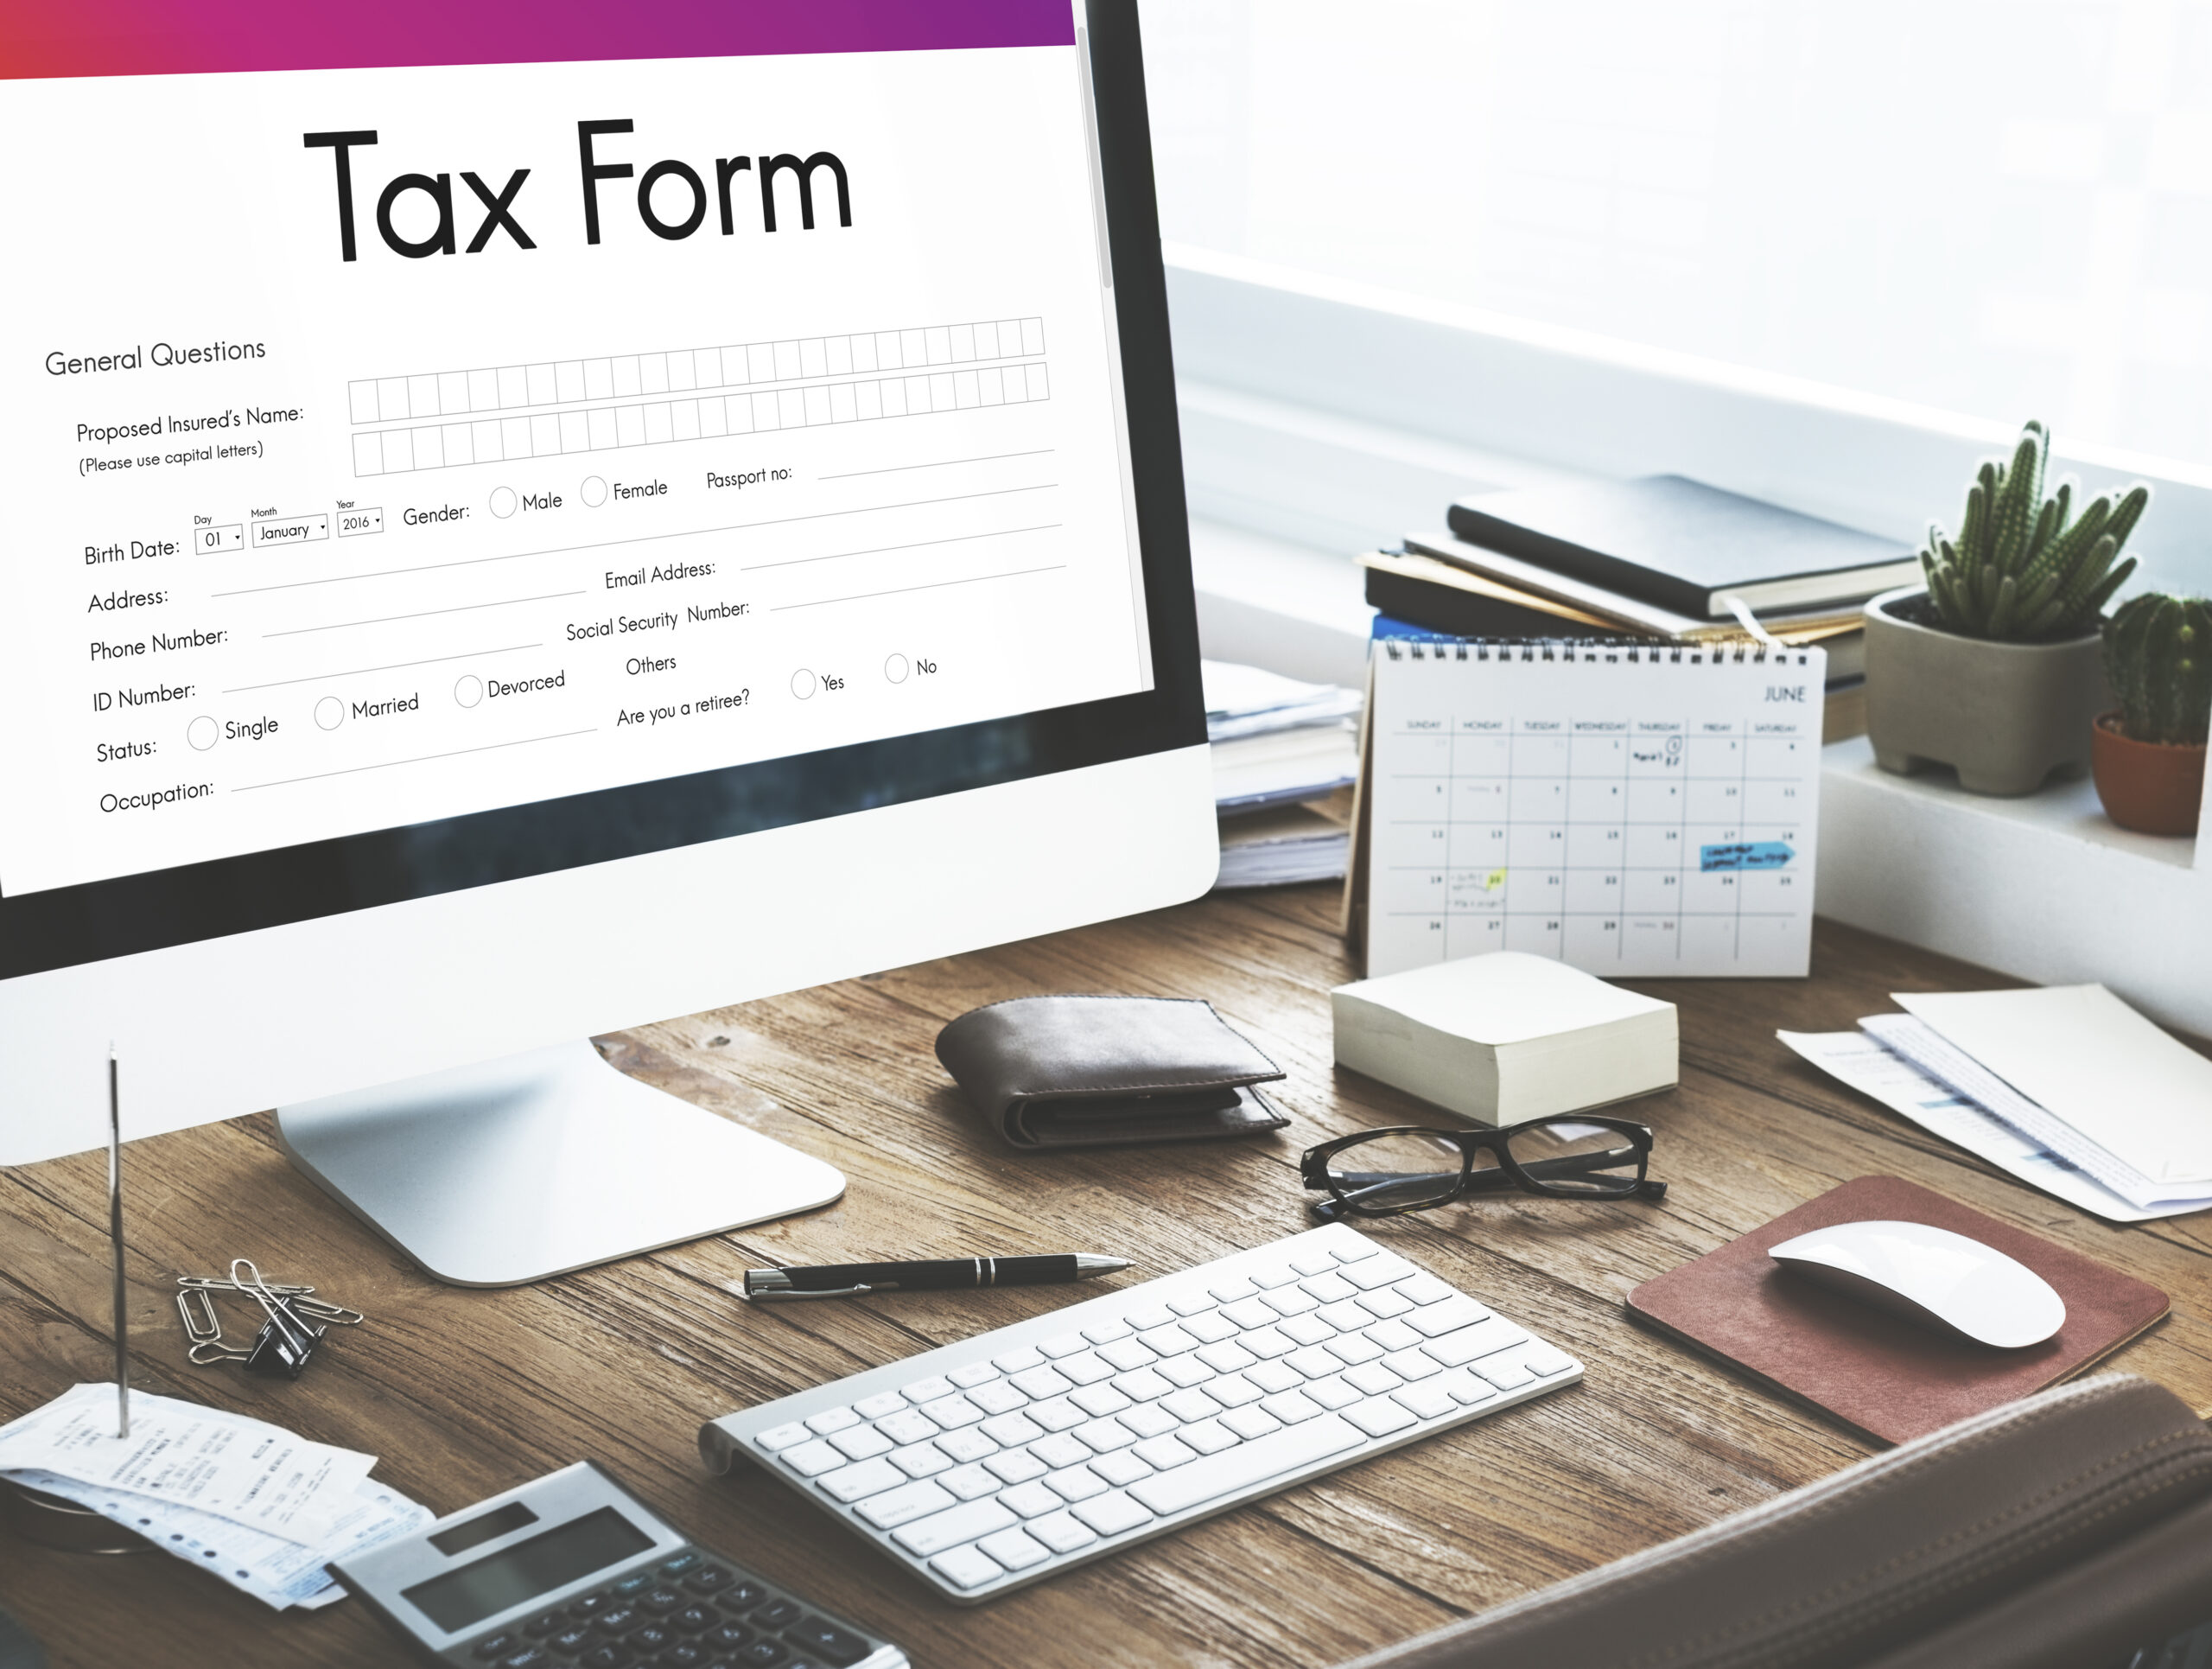 ข้อมูลสำคัญ ที่ต้องระบุลงในใบกำกับภาษี และ e-Tax Invoice